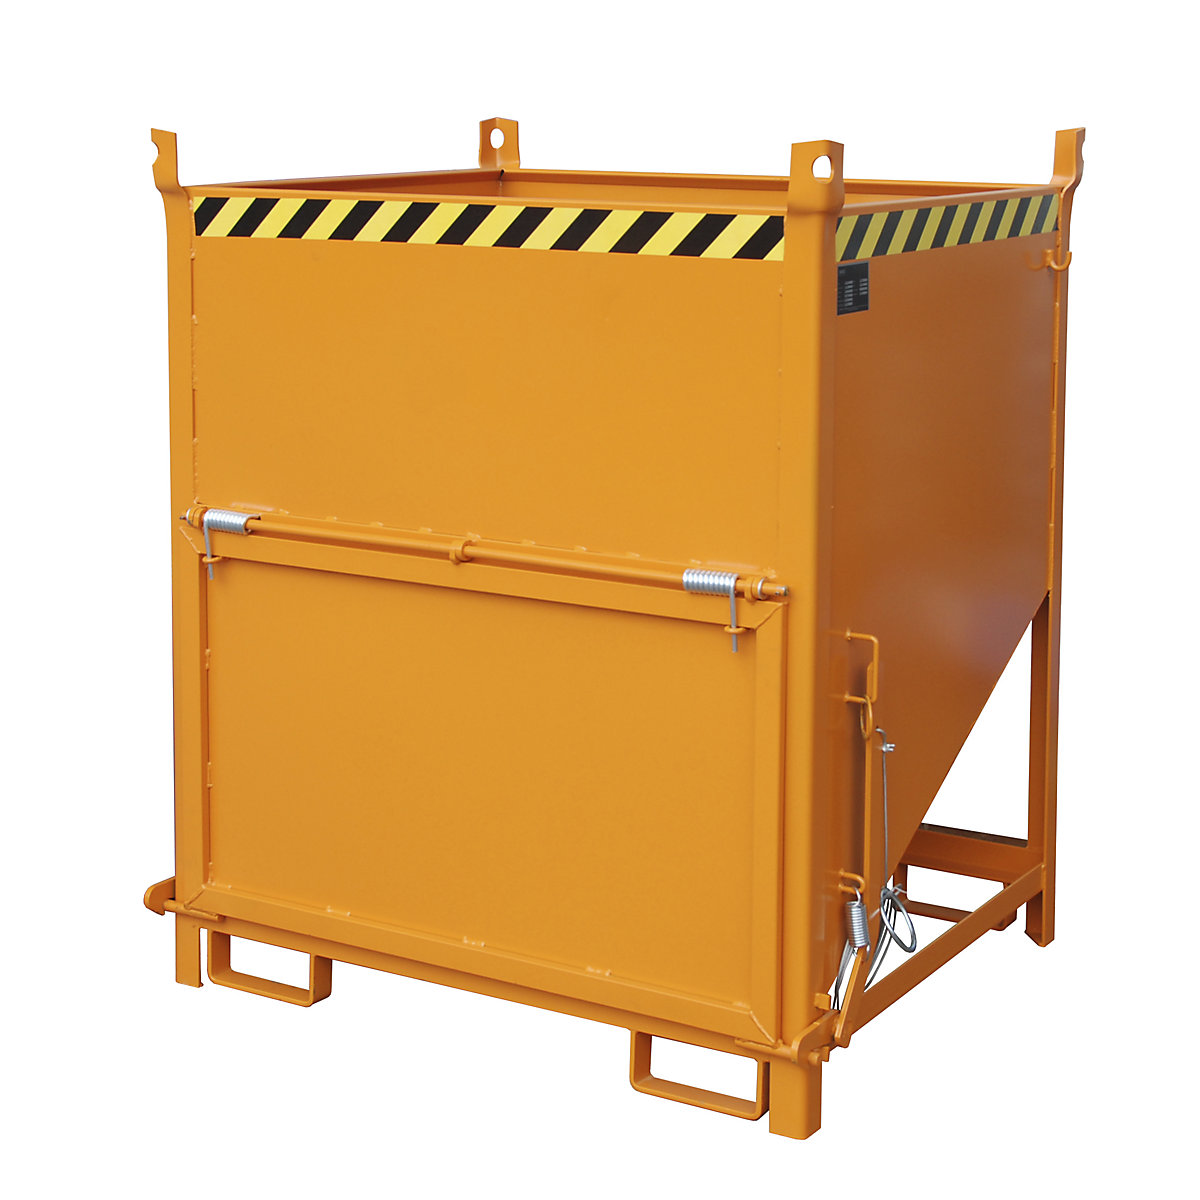 Conteneur-silo – eurokraft pro, capacité 1 m³, avec volet frontal, orange jaune RAL 2000-5